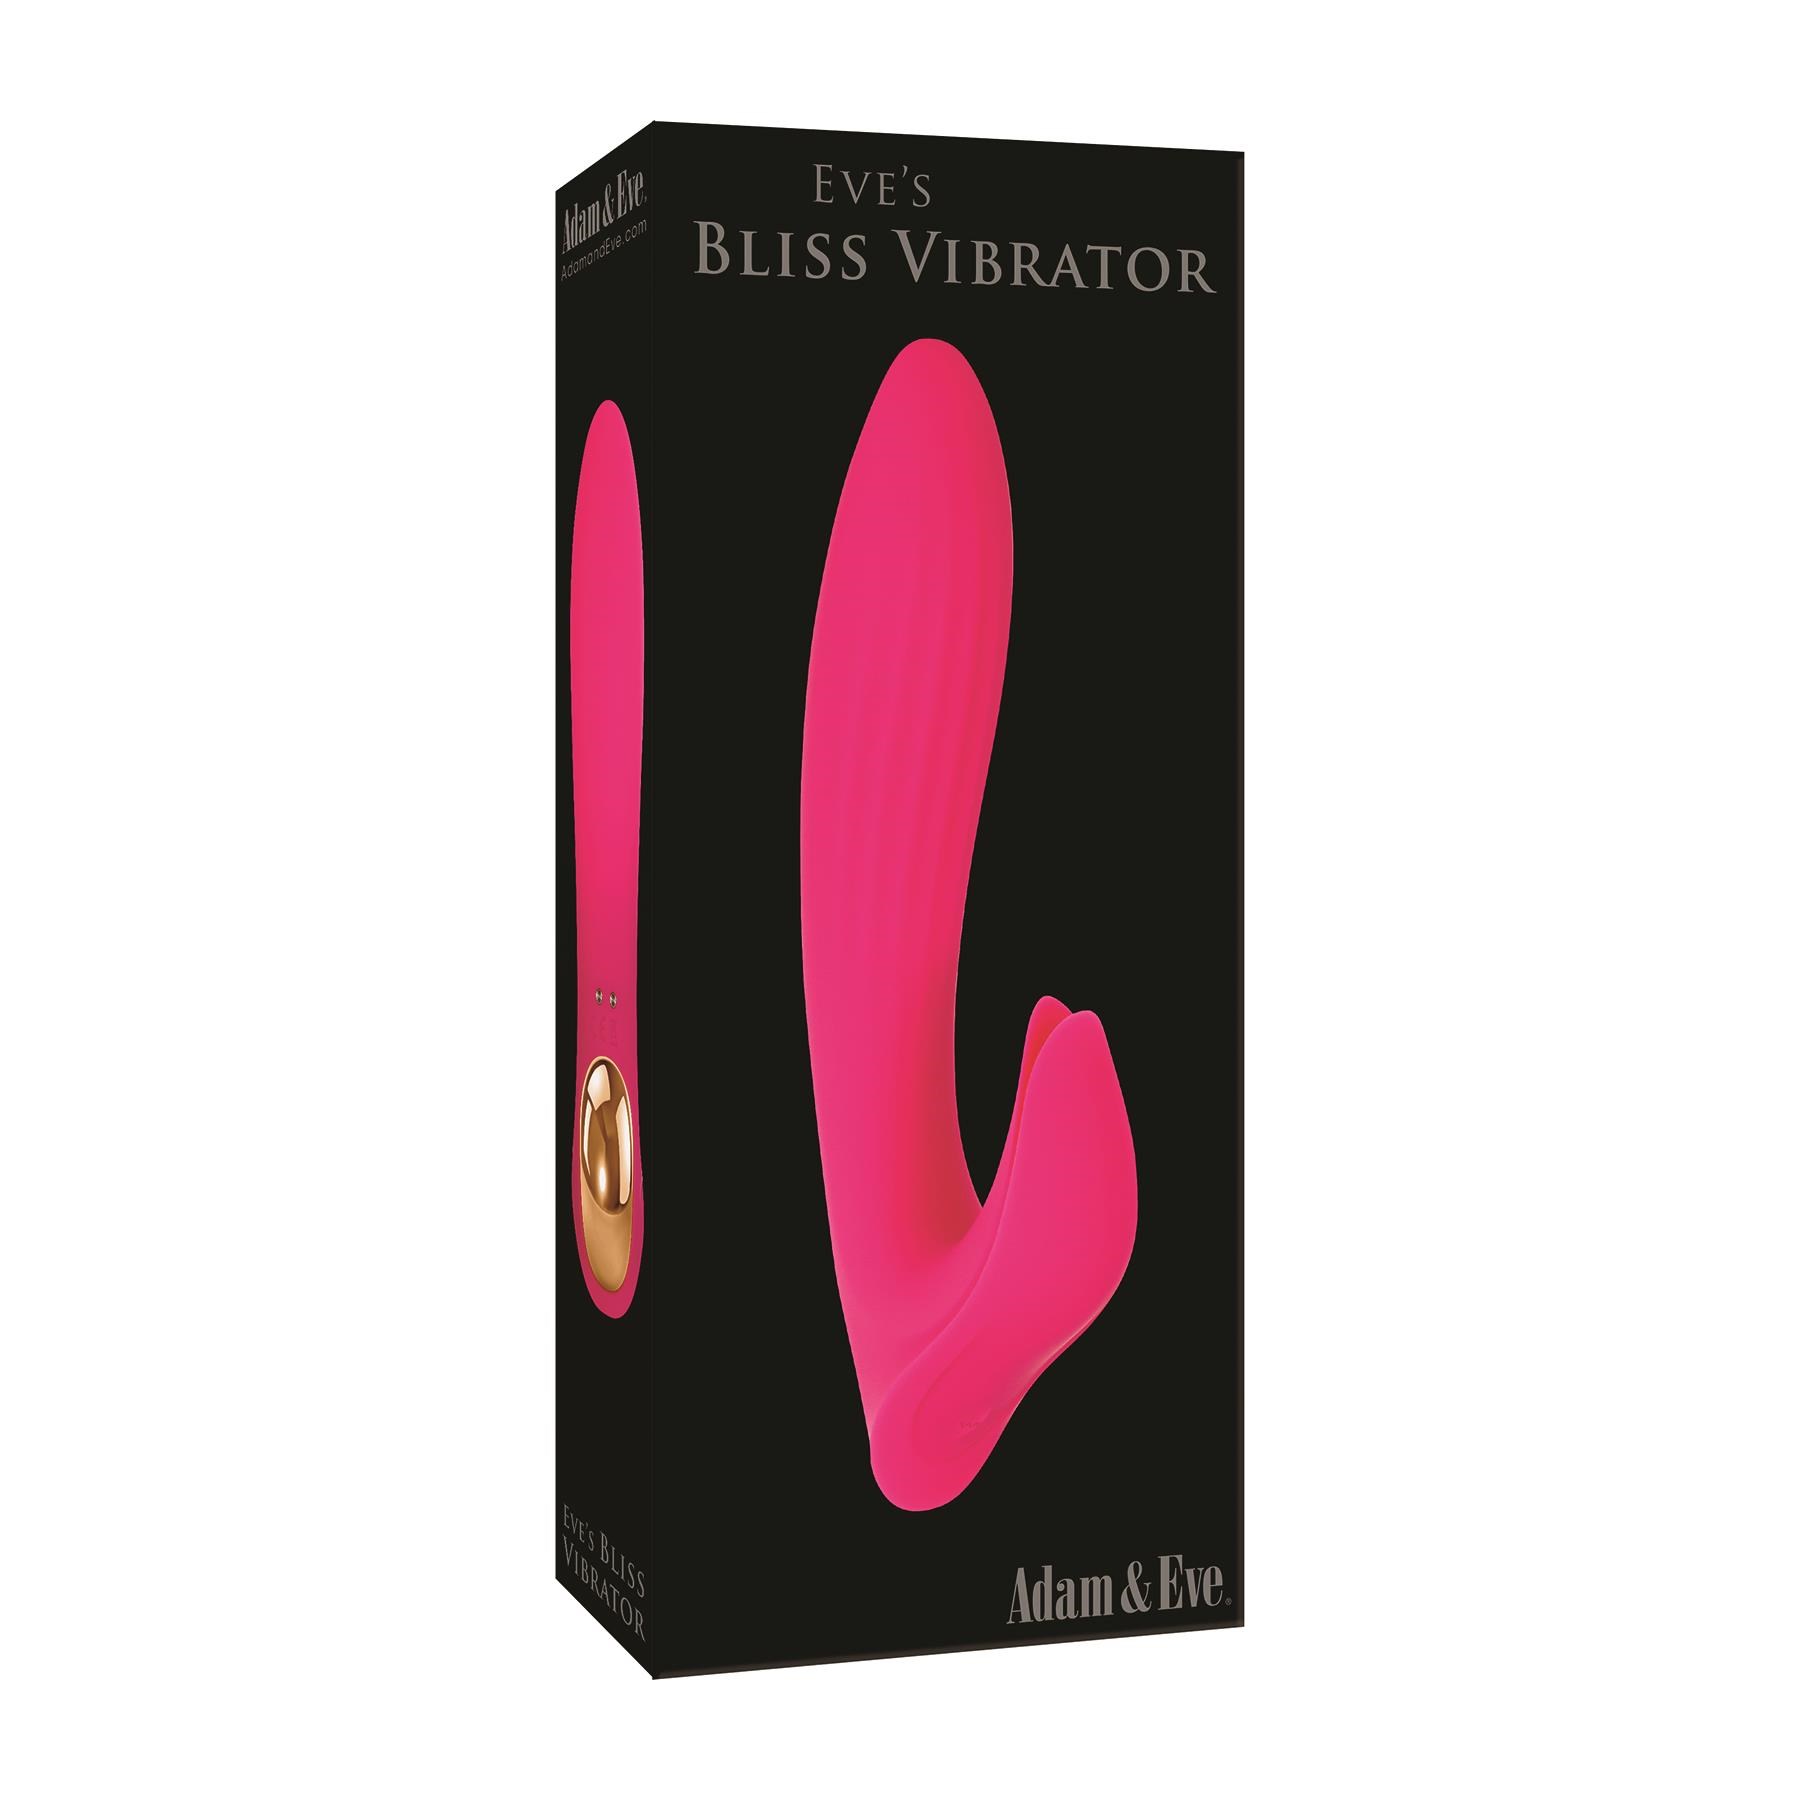 Eve's Bliss Vibrator Packaging Shot